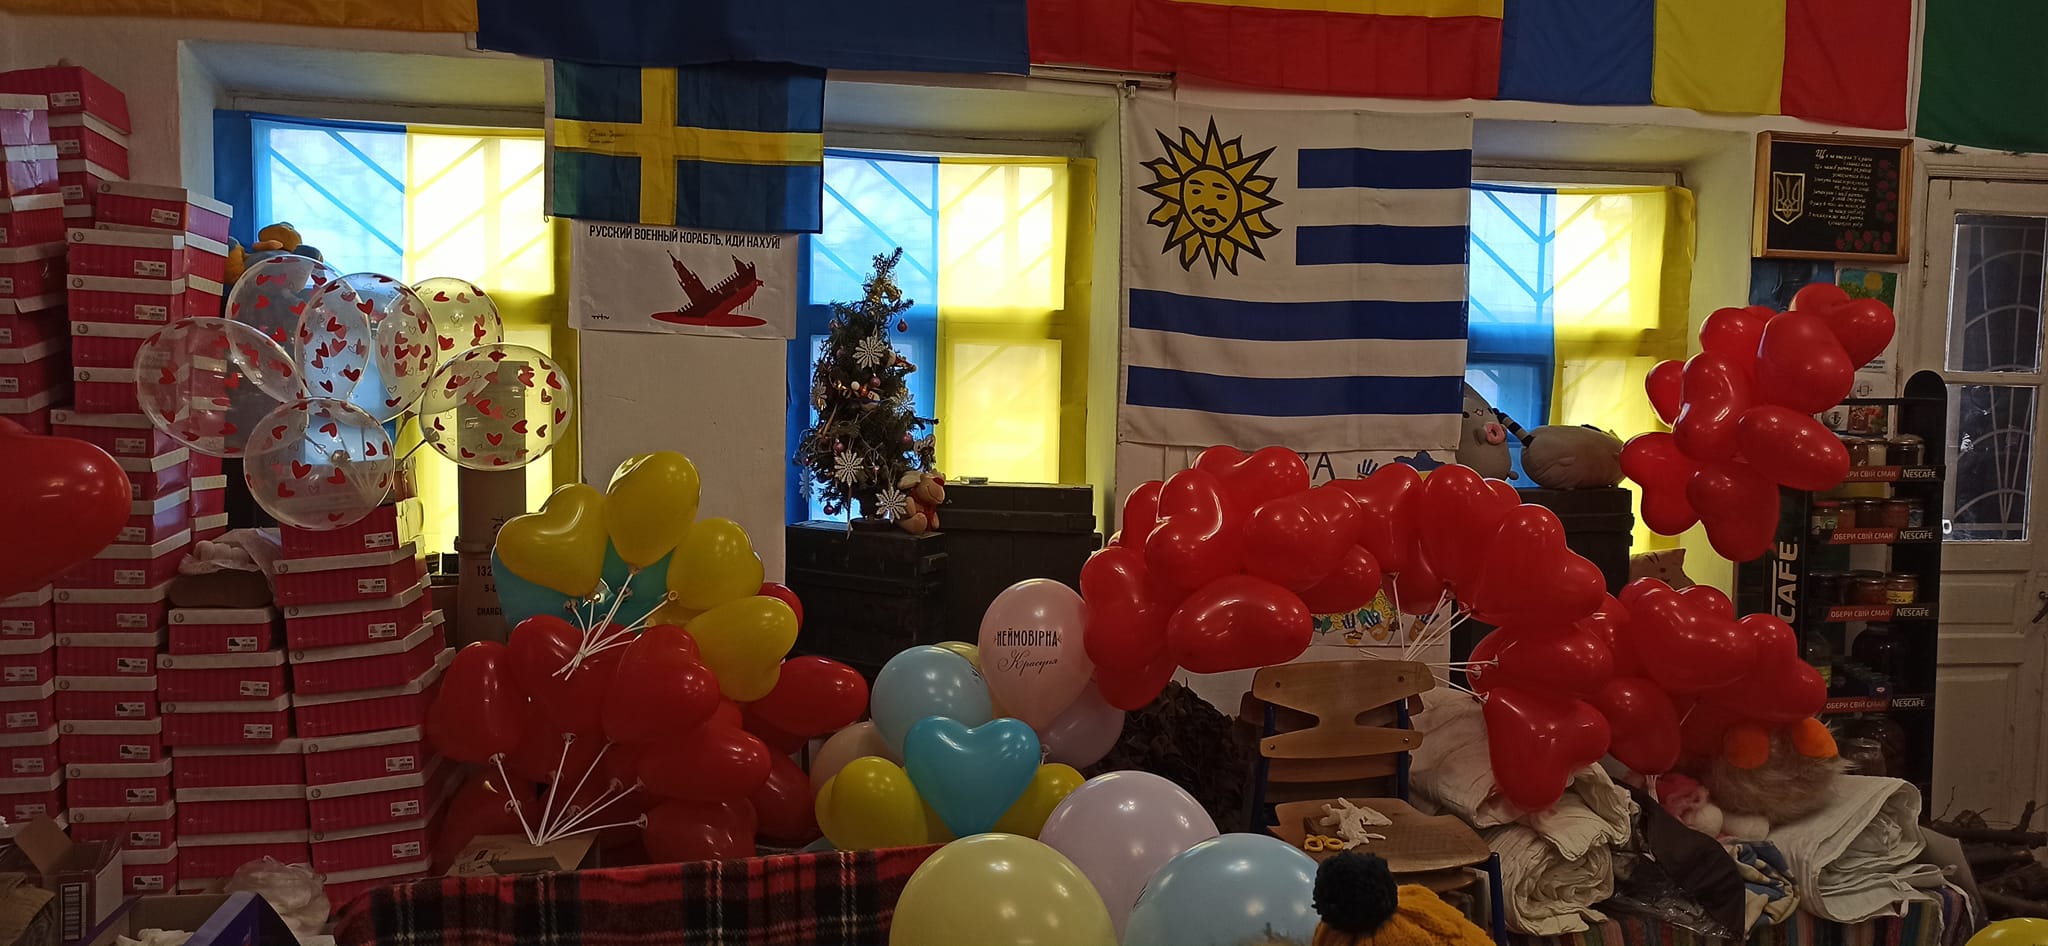 Килия: волонтеры поздравили с Днем любви случайных прохожих шариками и хорошим настроением